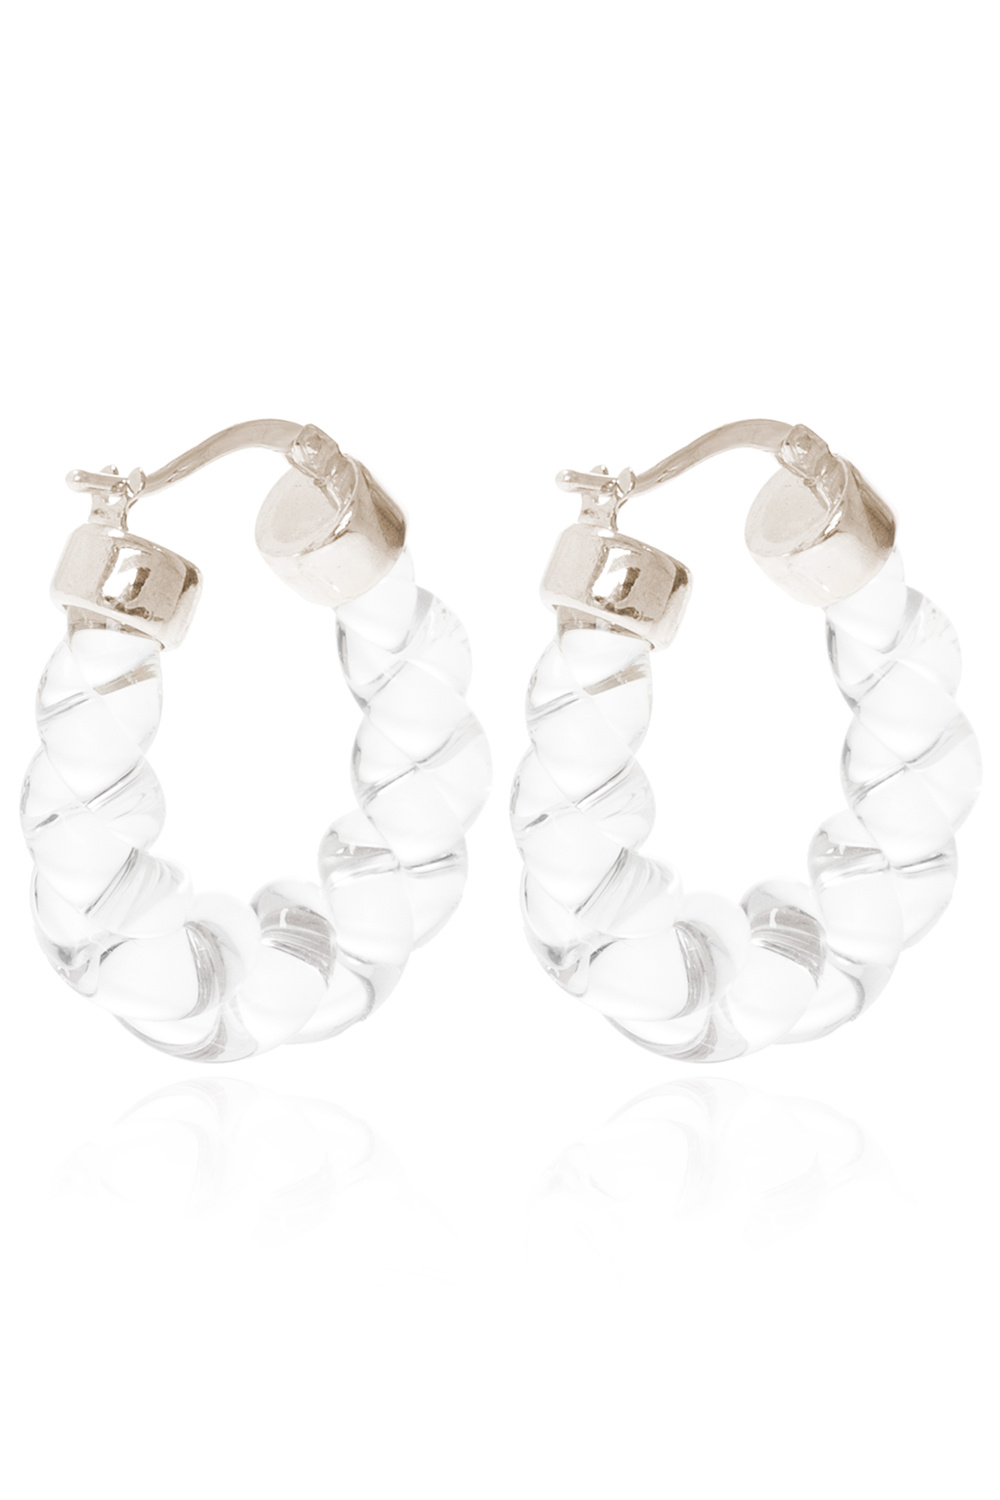 Bottega Veneta Glass earrings